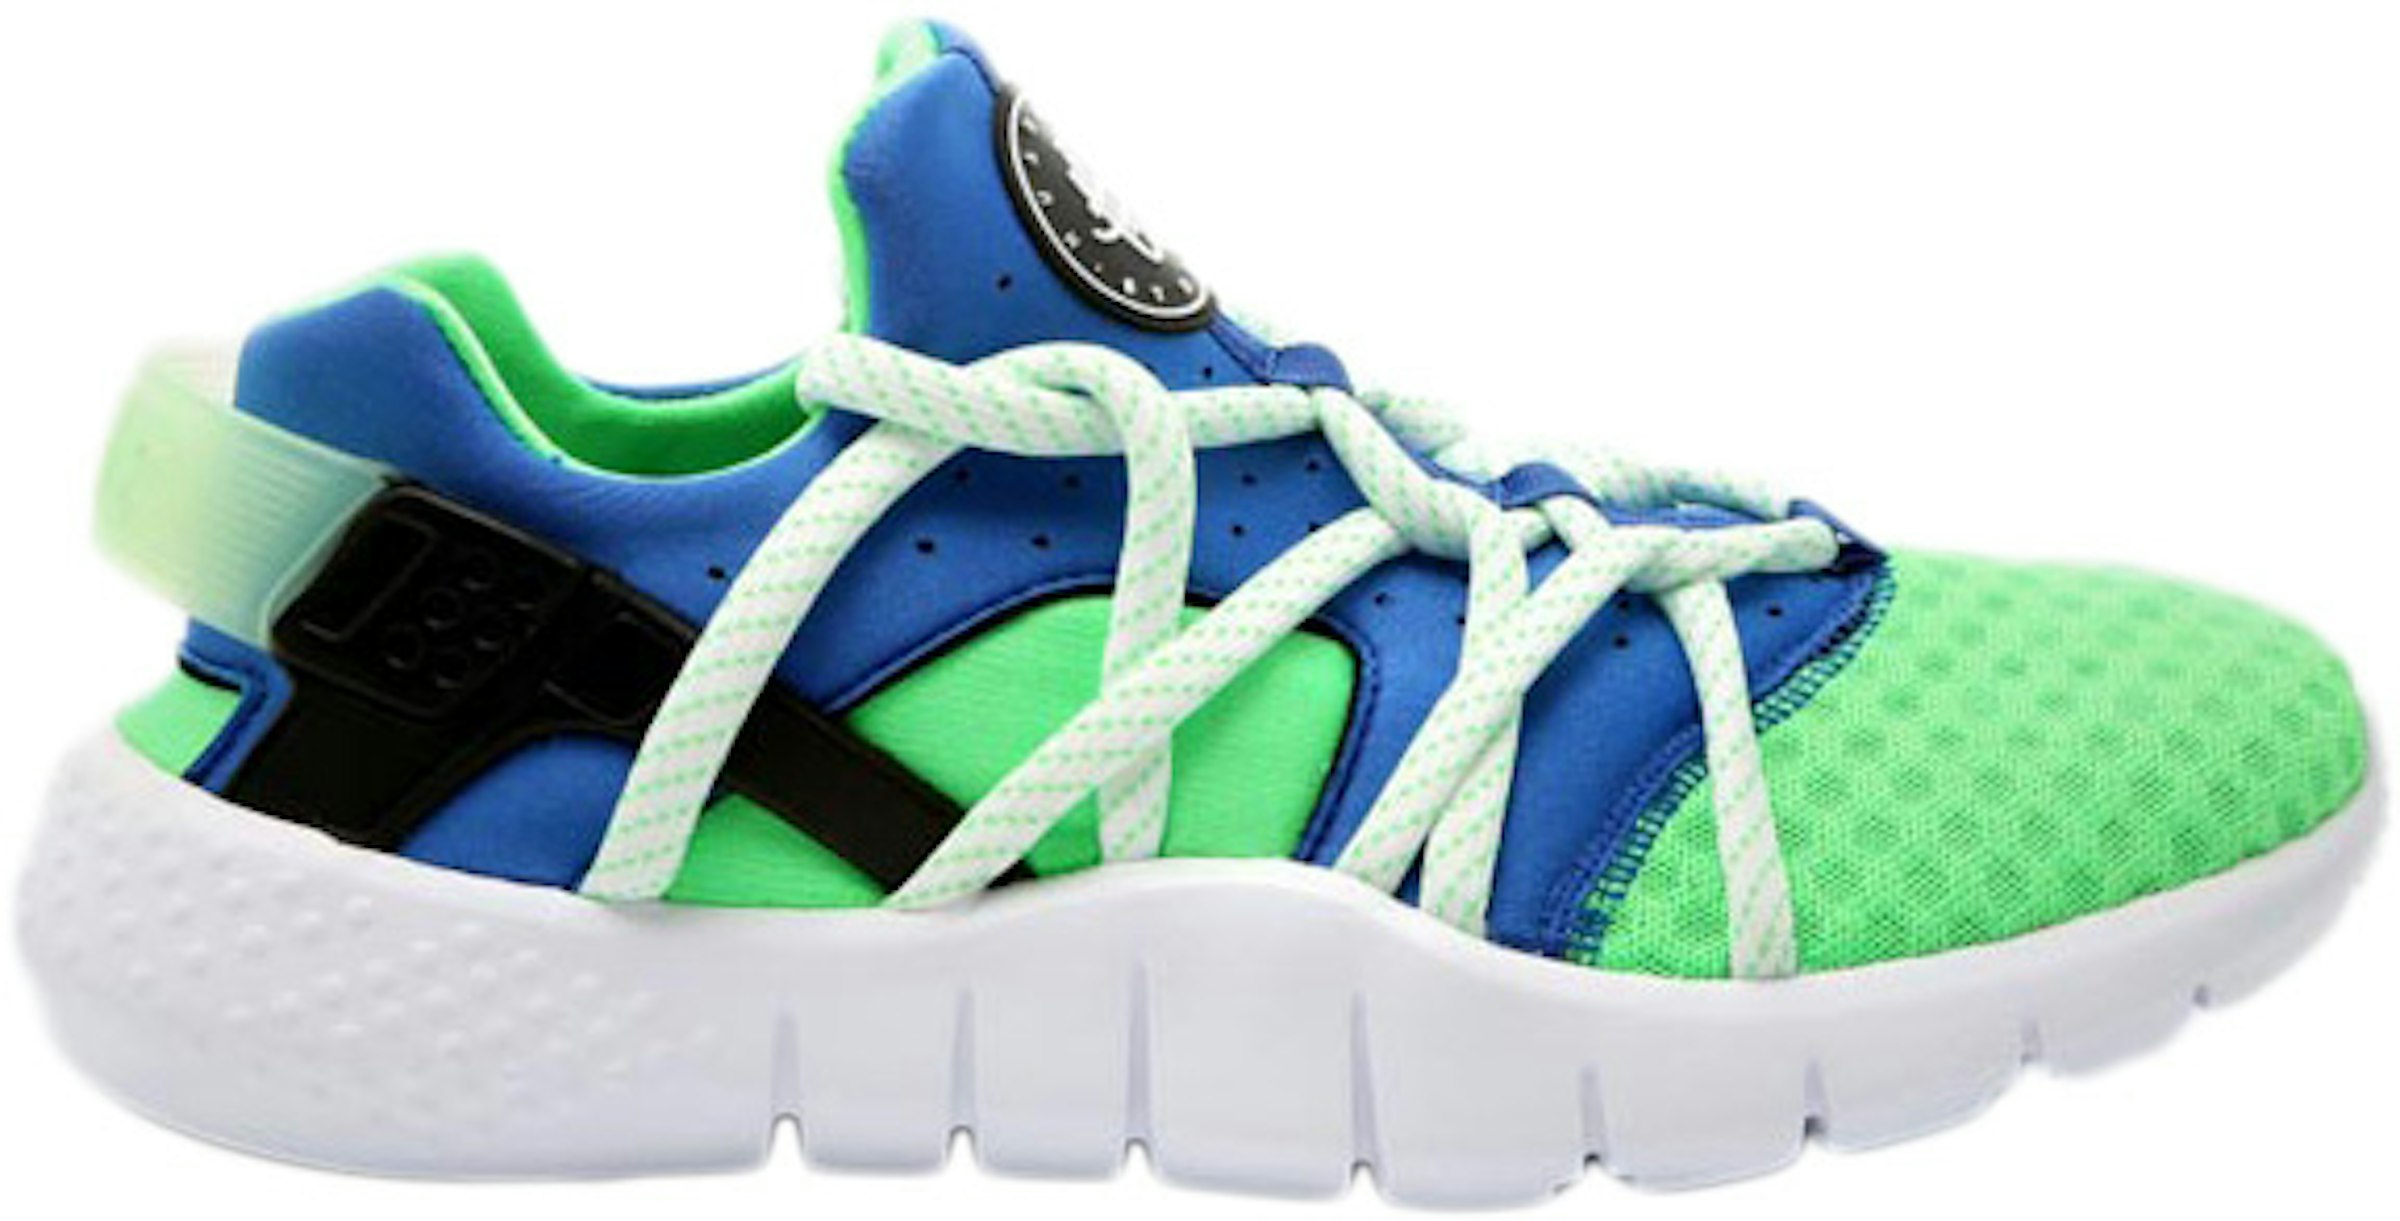 Nike Huarache Scream Green - 705159-304 - US